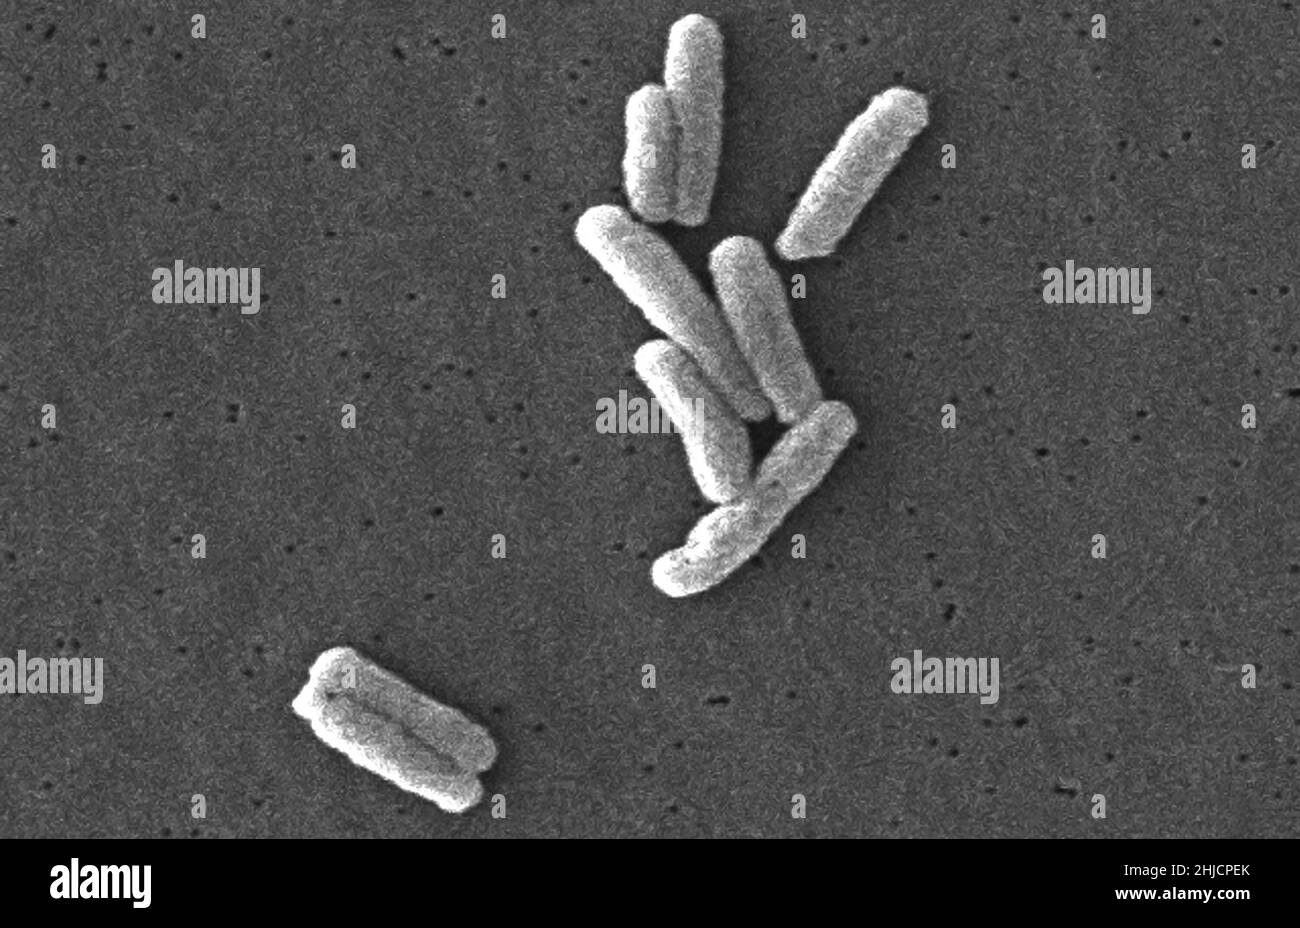 La micrografia elettronica a scansione (SEM) di un certo numero di batteri Gram-negativi della Legionella pneumophila, la causa della malattia di Legionnaires. Ingrandimento: 12.000x. Foto Stock